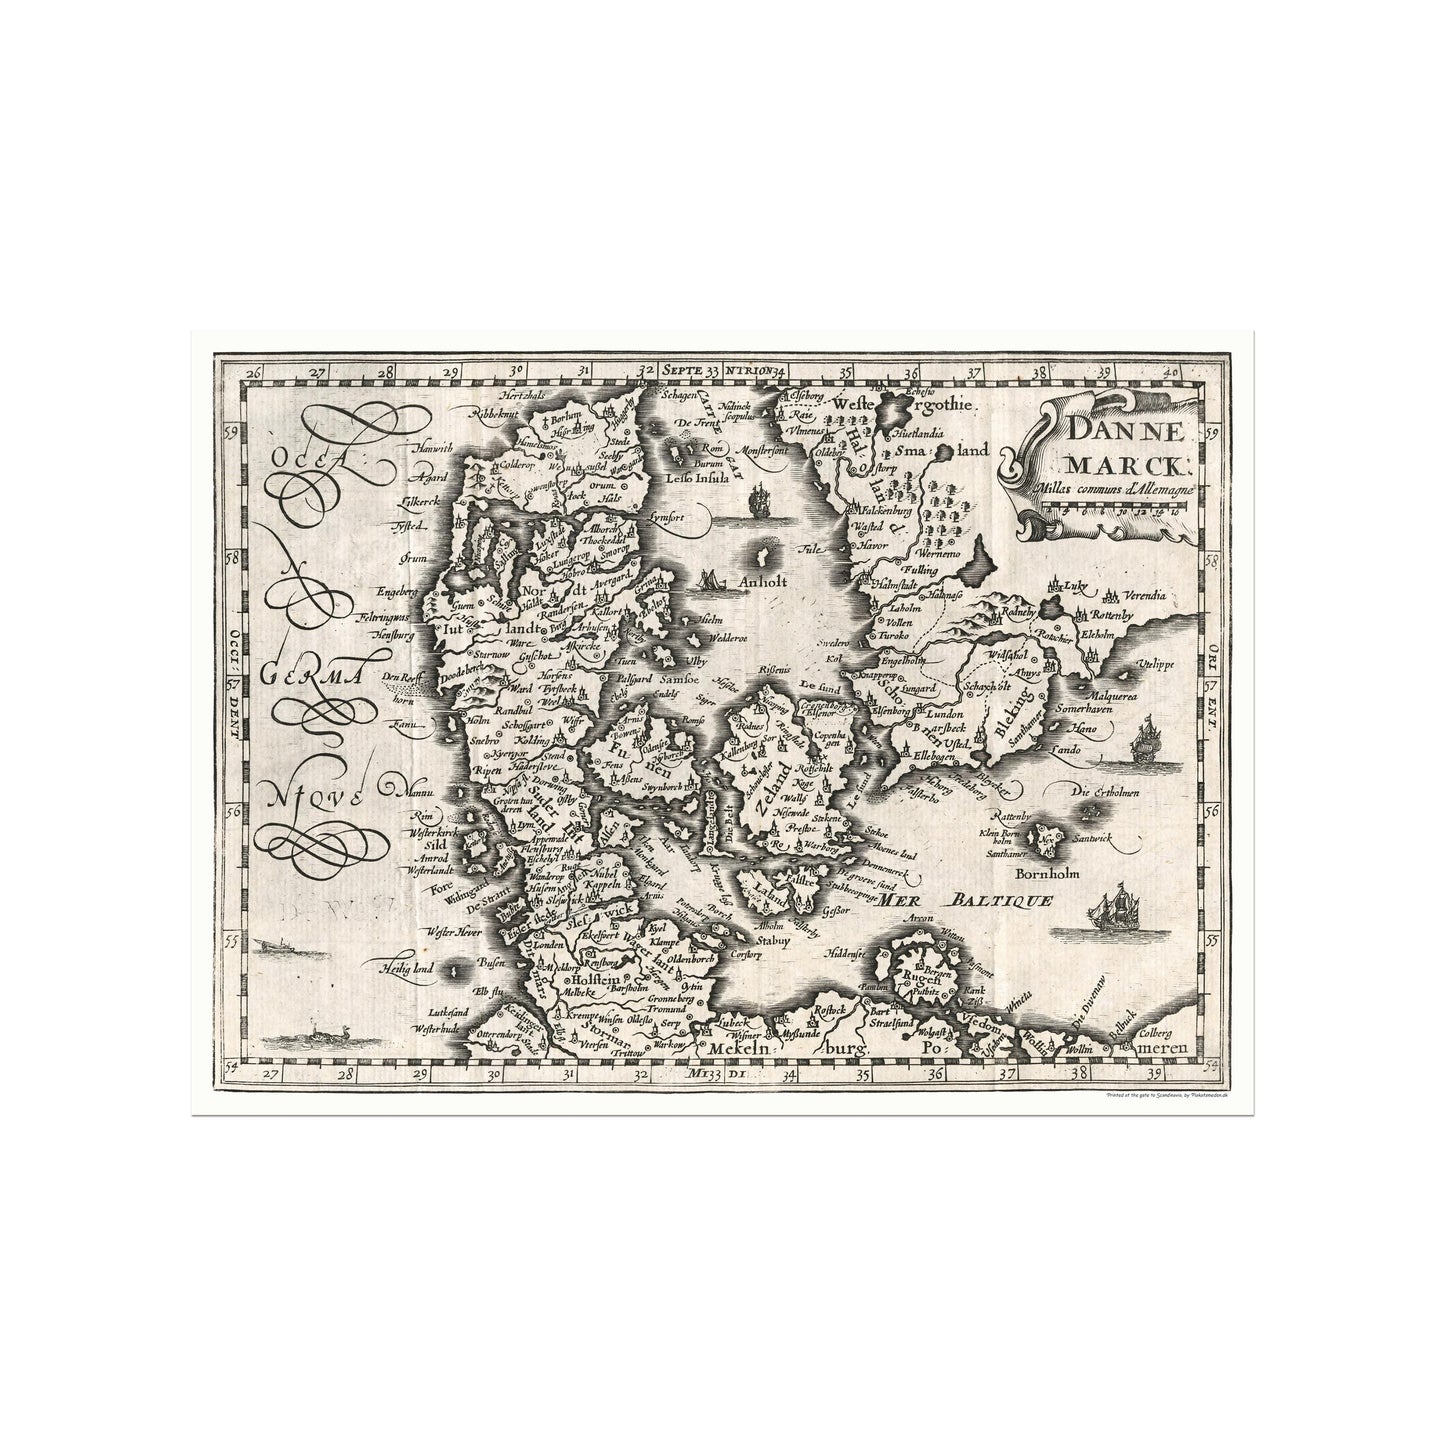 Dannemarck, 1734 - Map of Denmark